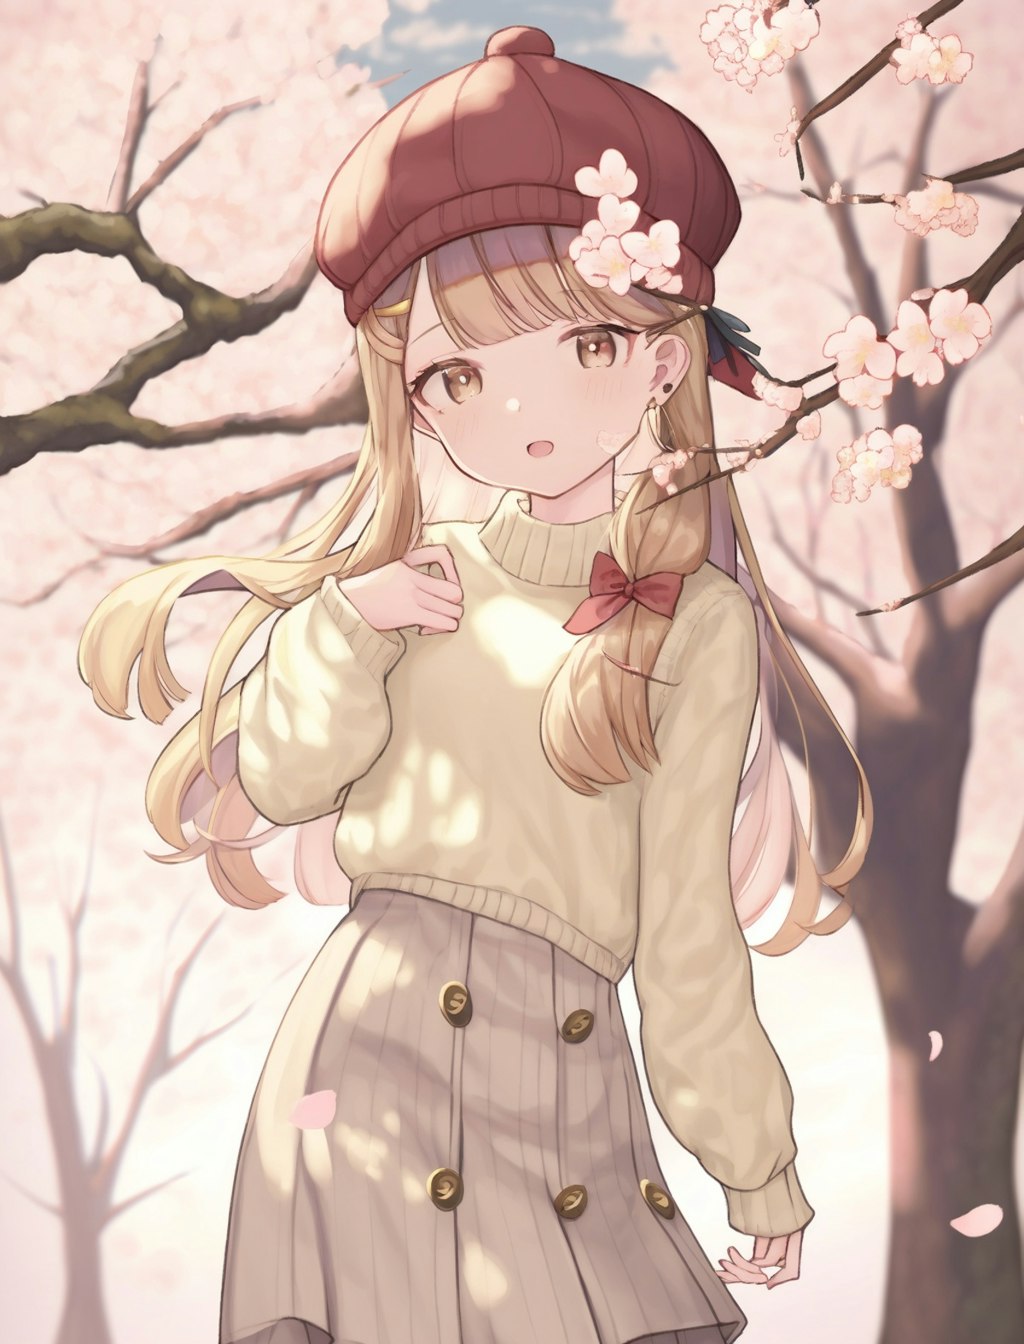 ベレー帽を被った少女と桜